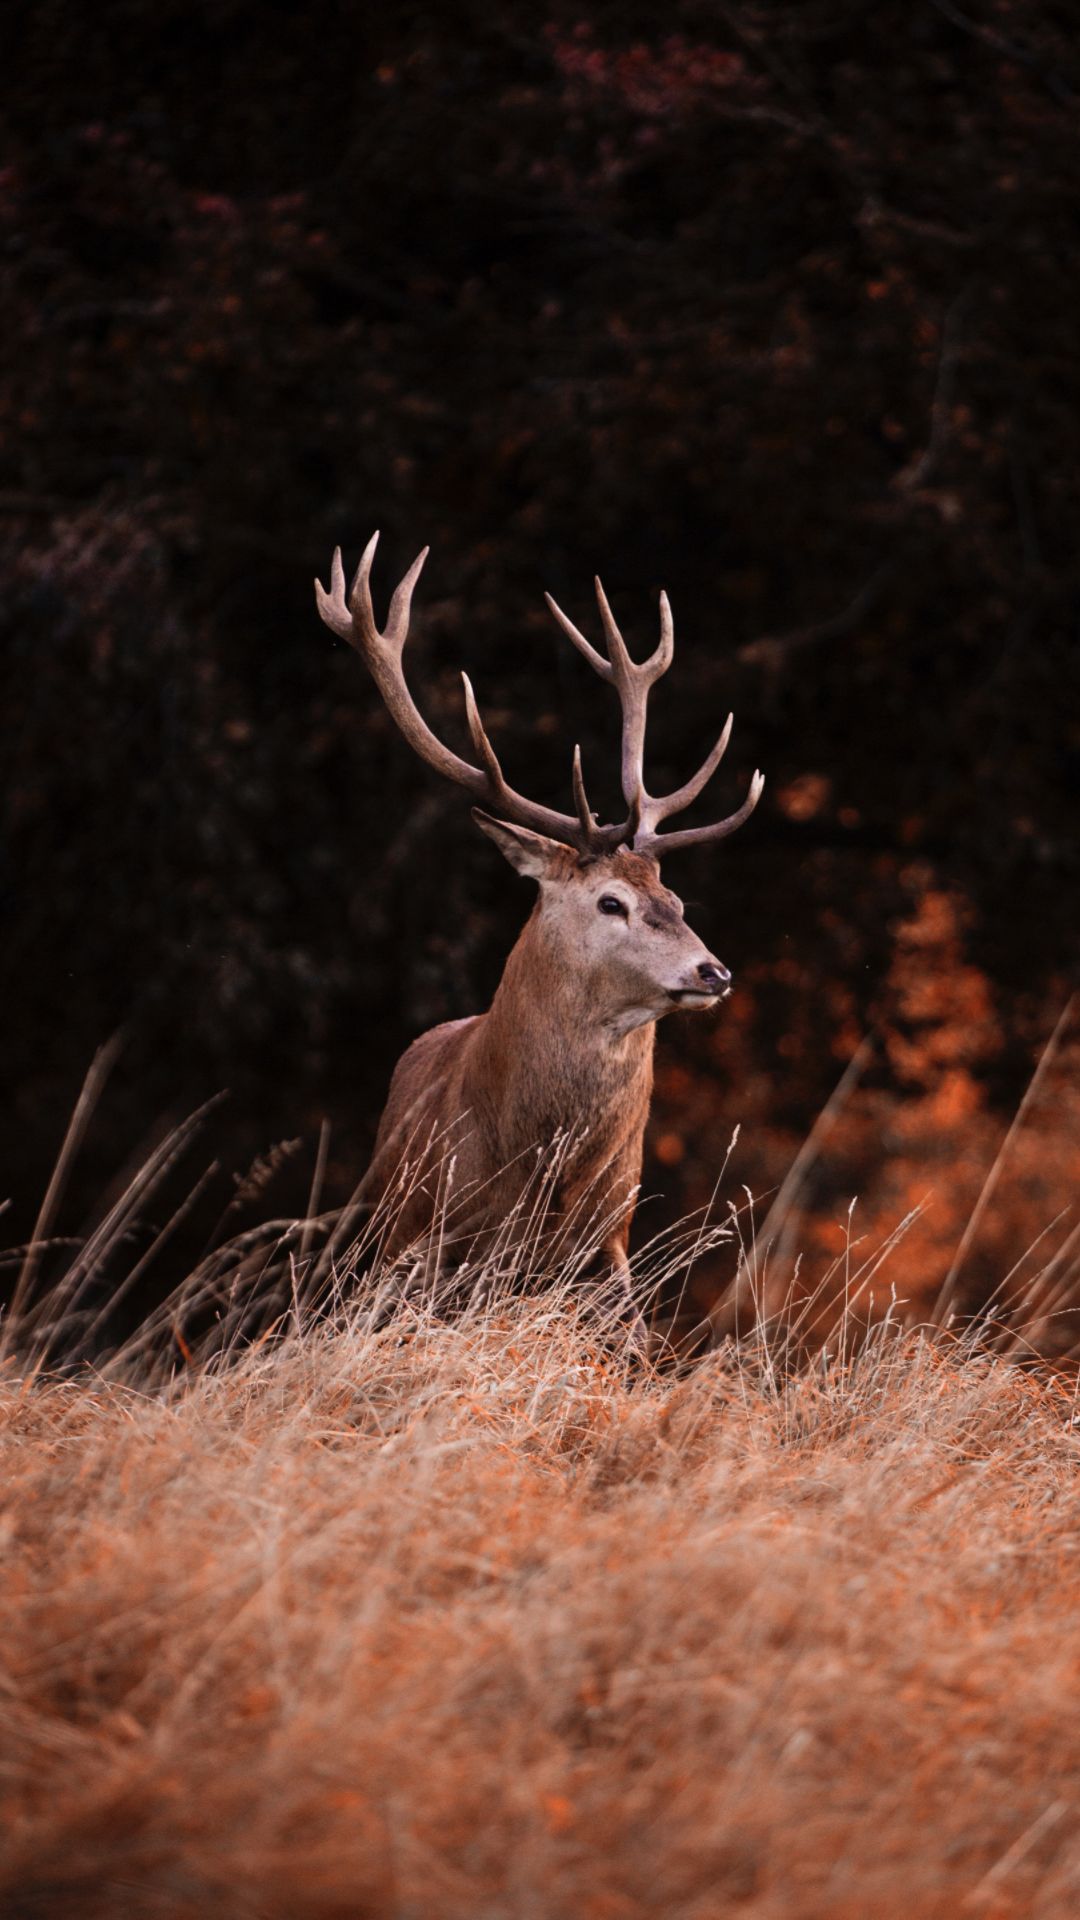 A deer with antlers in a field - Deer